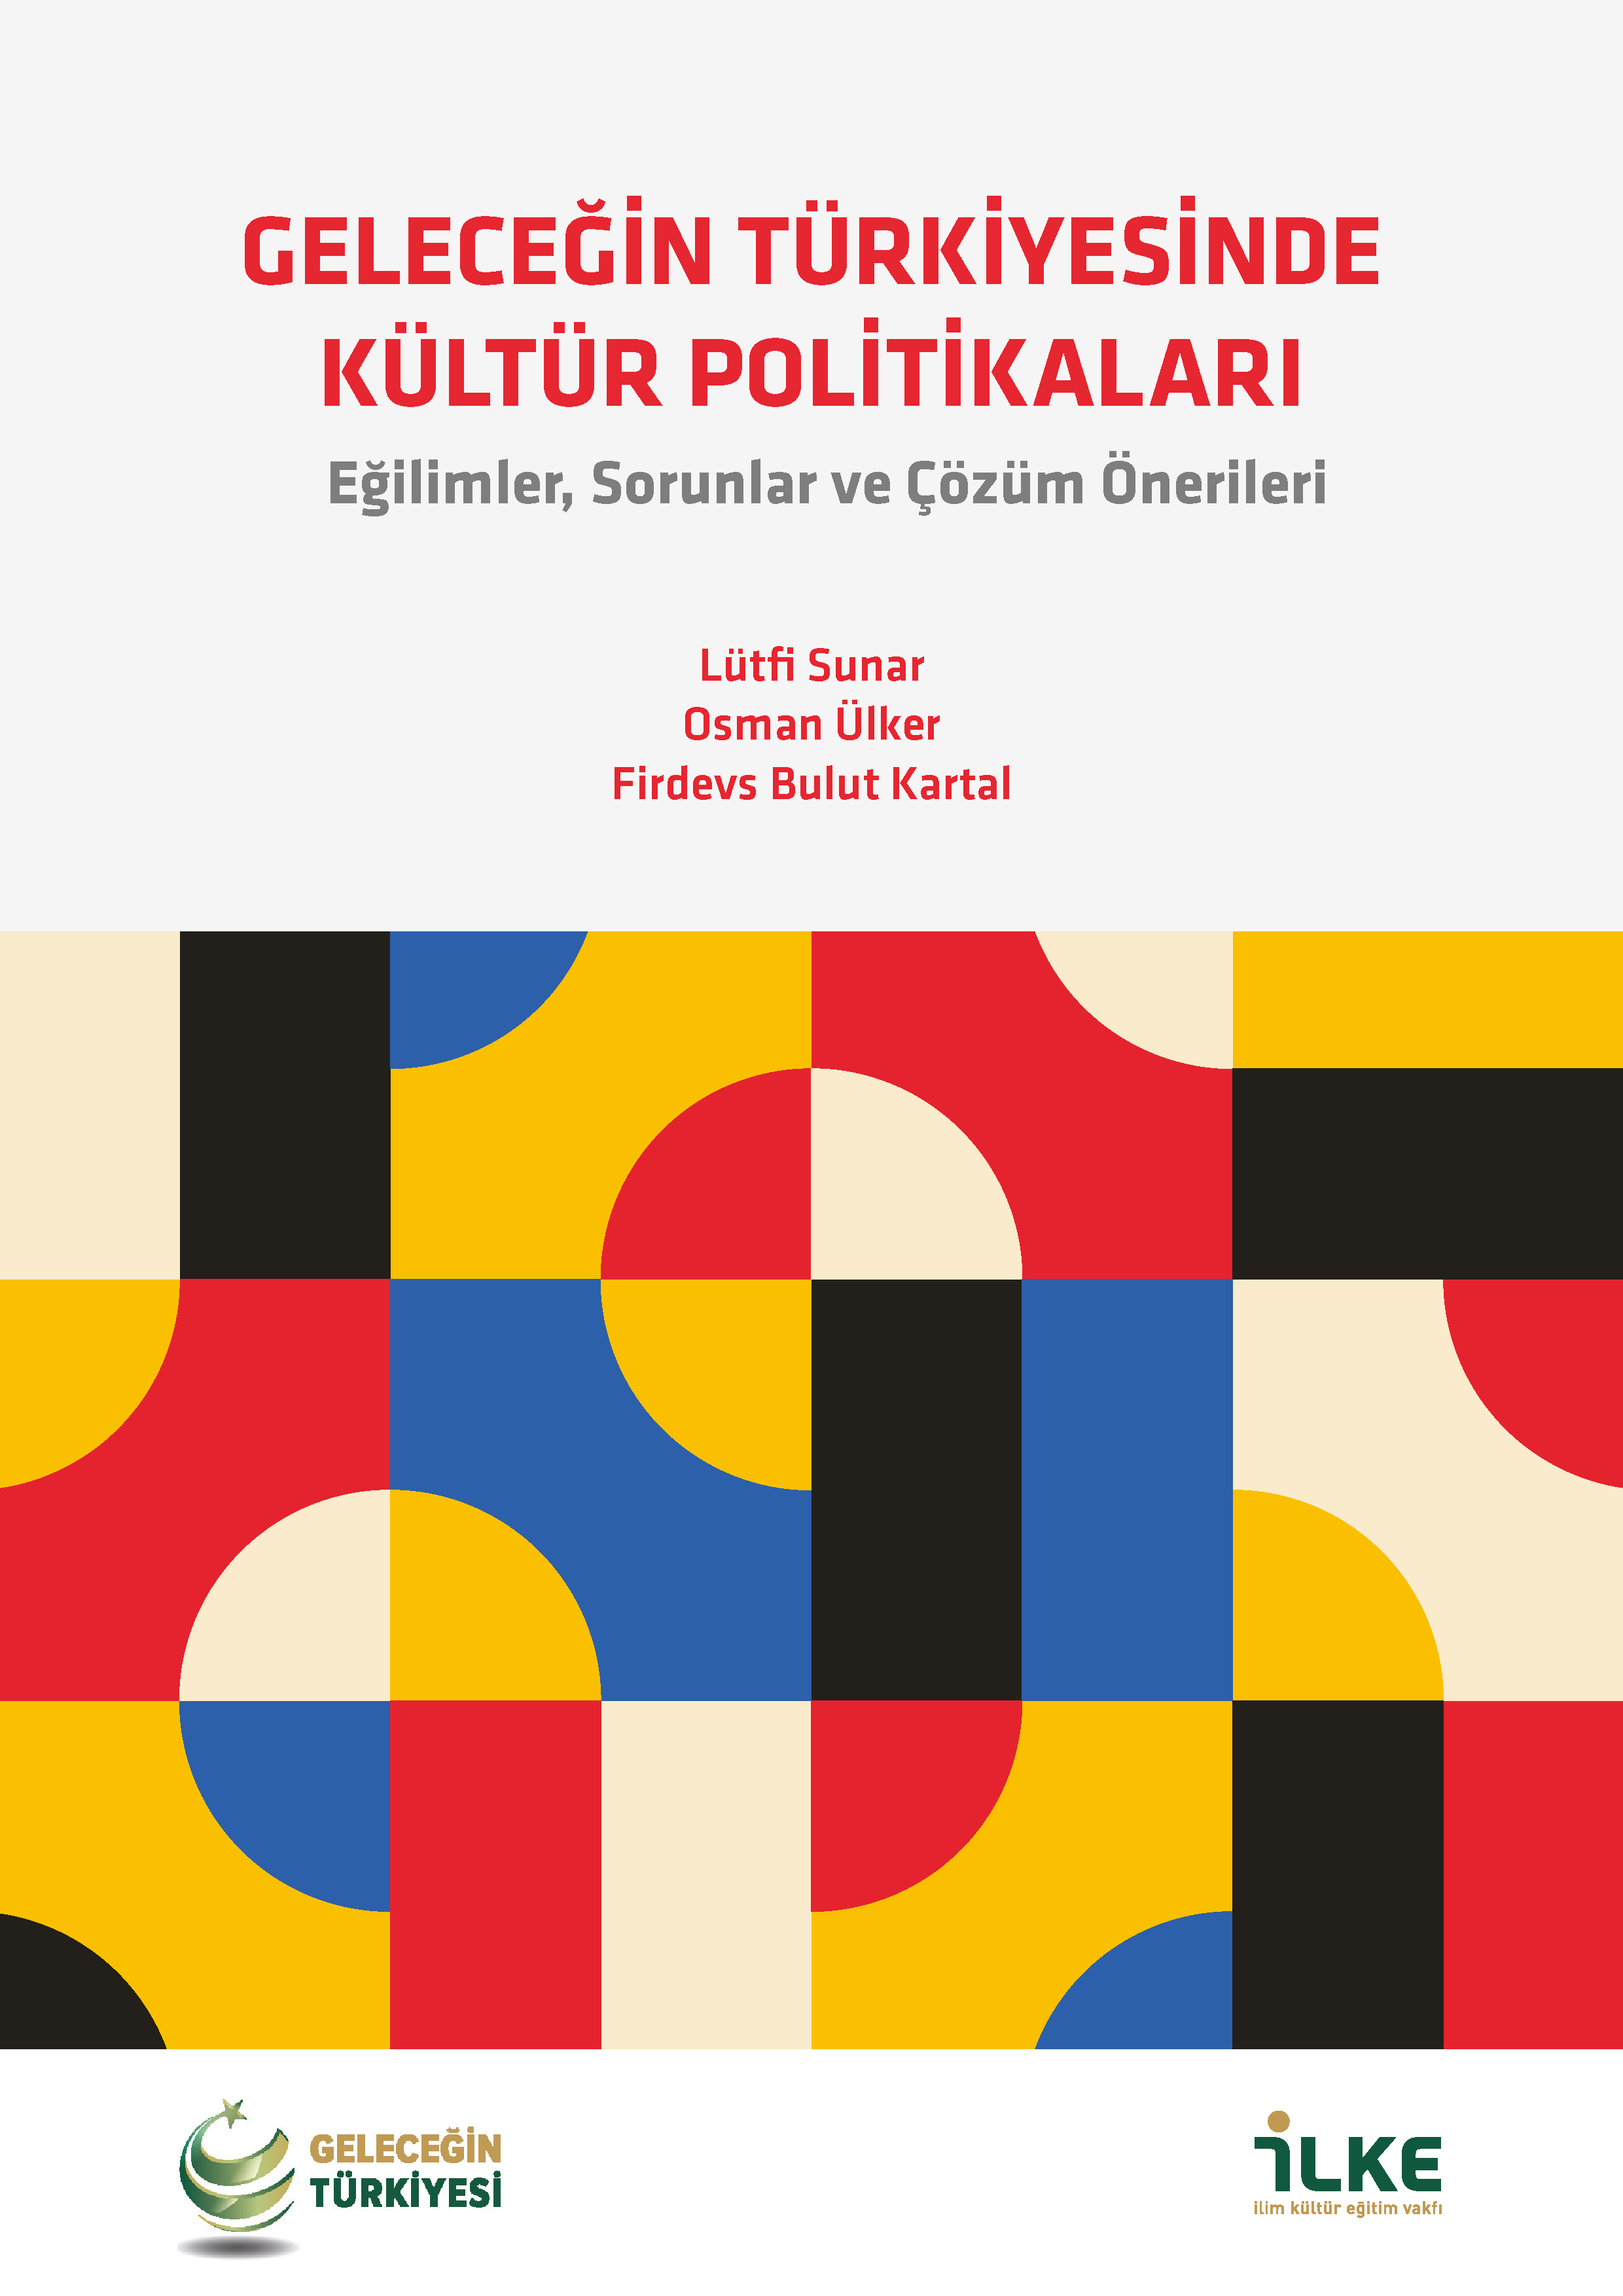 Geleceğin Türkiyesinde Kültür Politikaları Özet Raporu